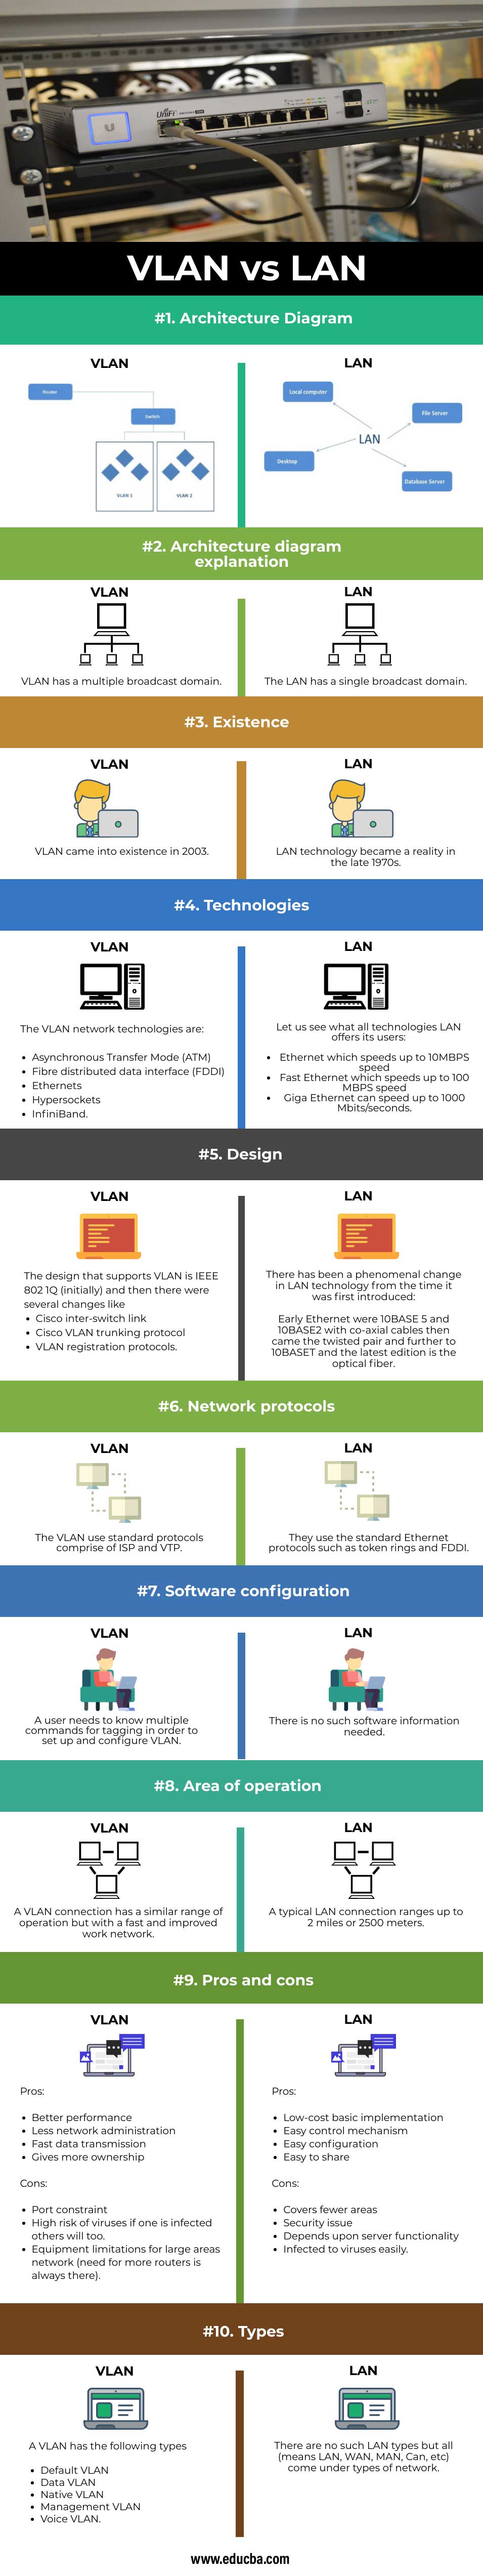 VLAN-vs-LAN-info